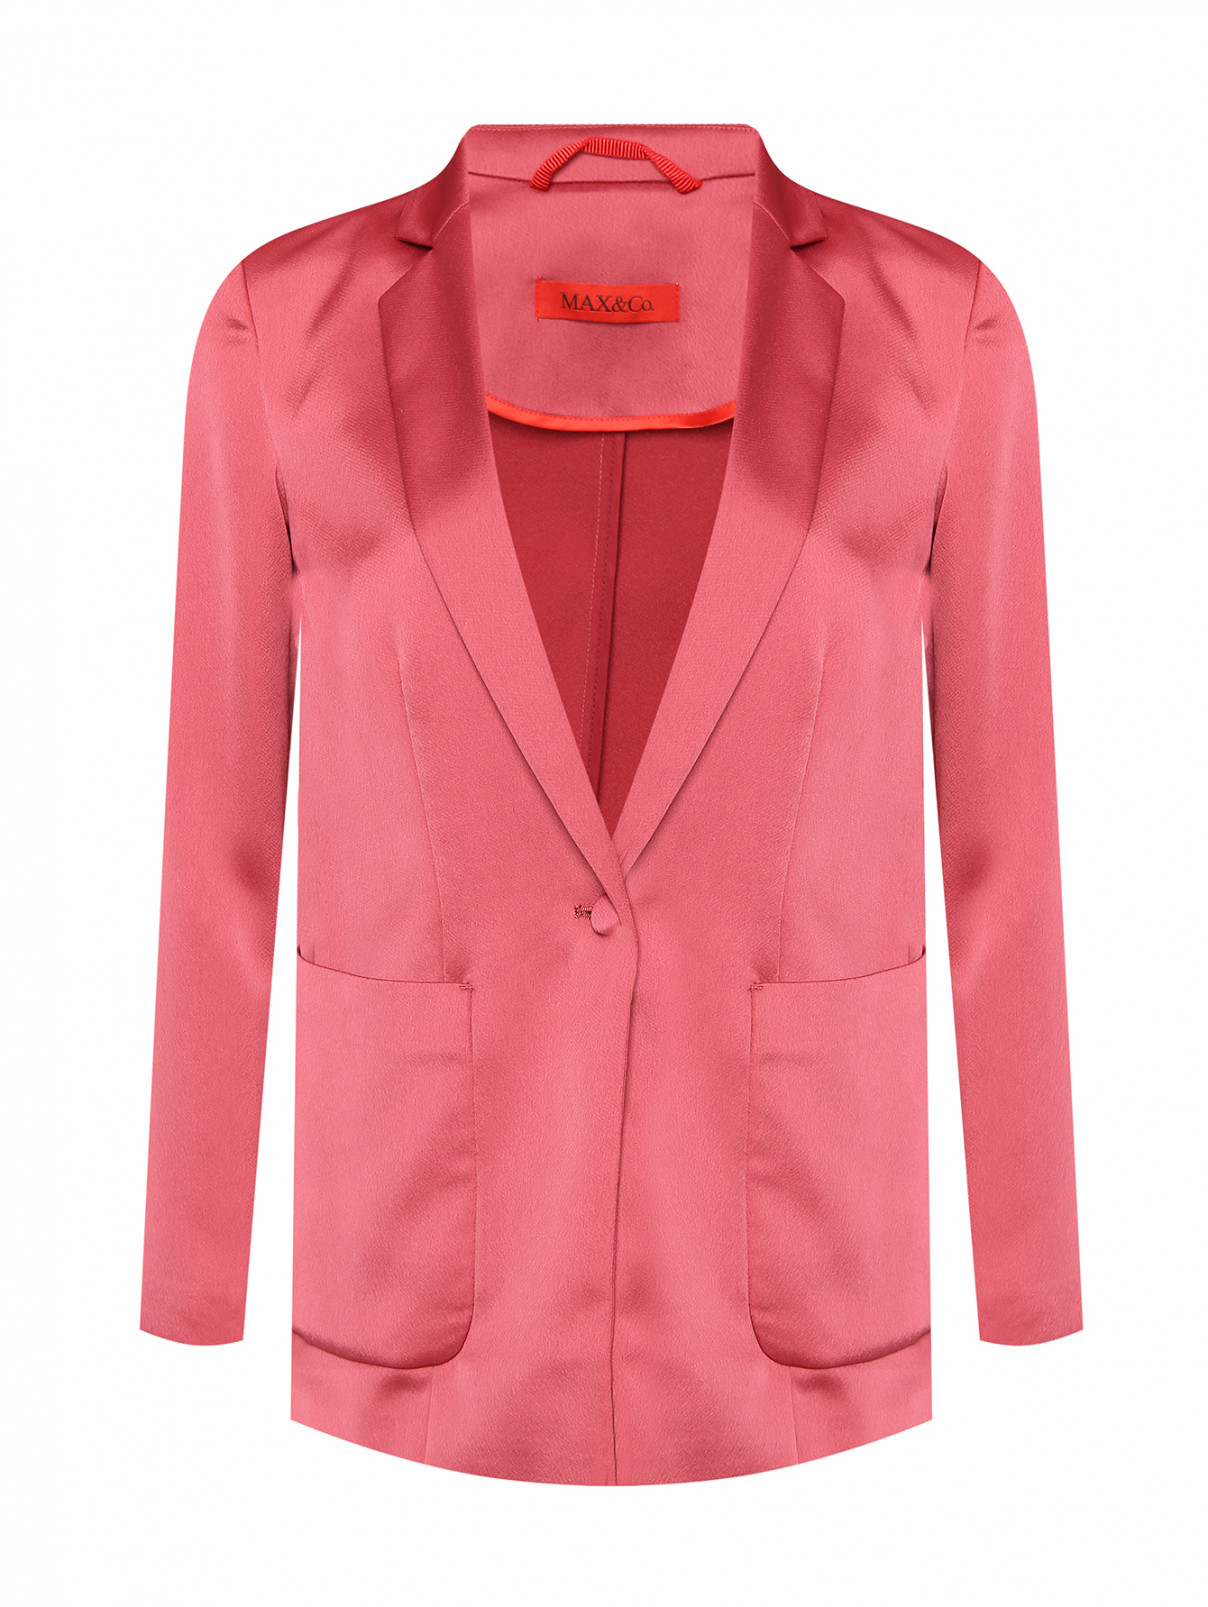 Однобортный жакет на пуговицах и накладными карманами Max&Co  –  Общий вид  – Цвет:  Красный